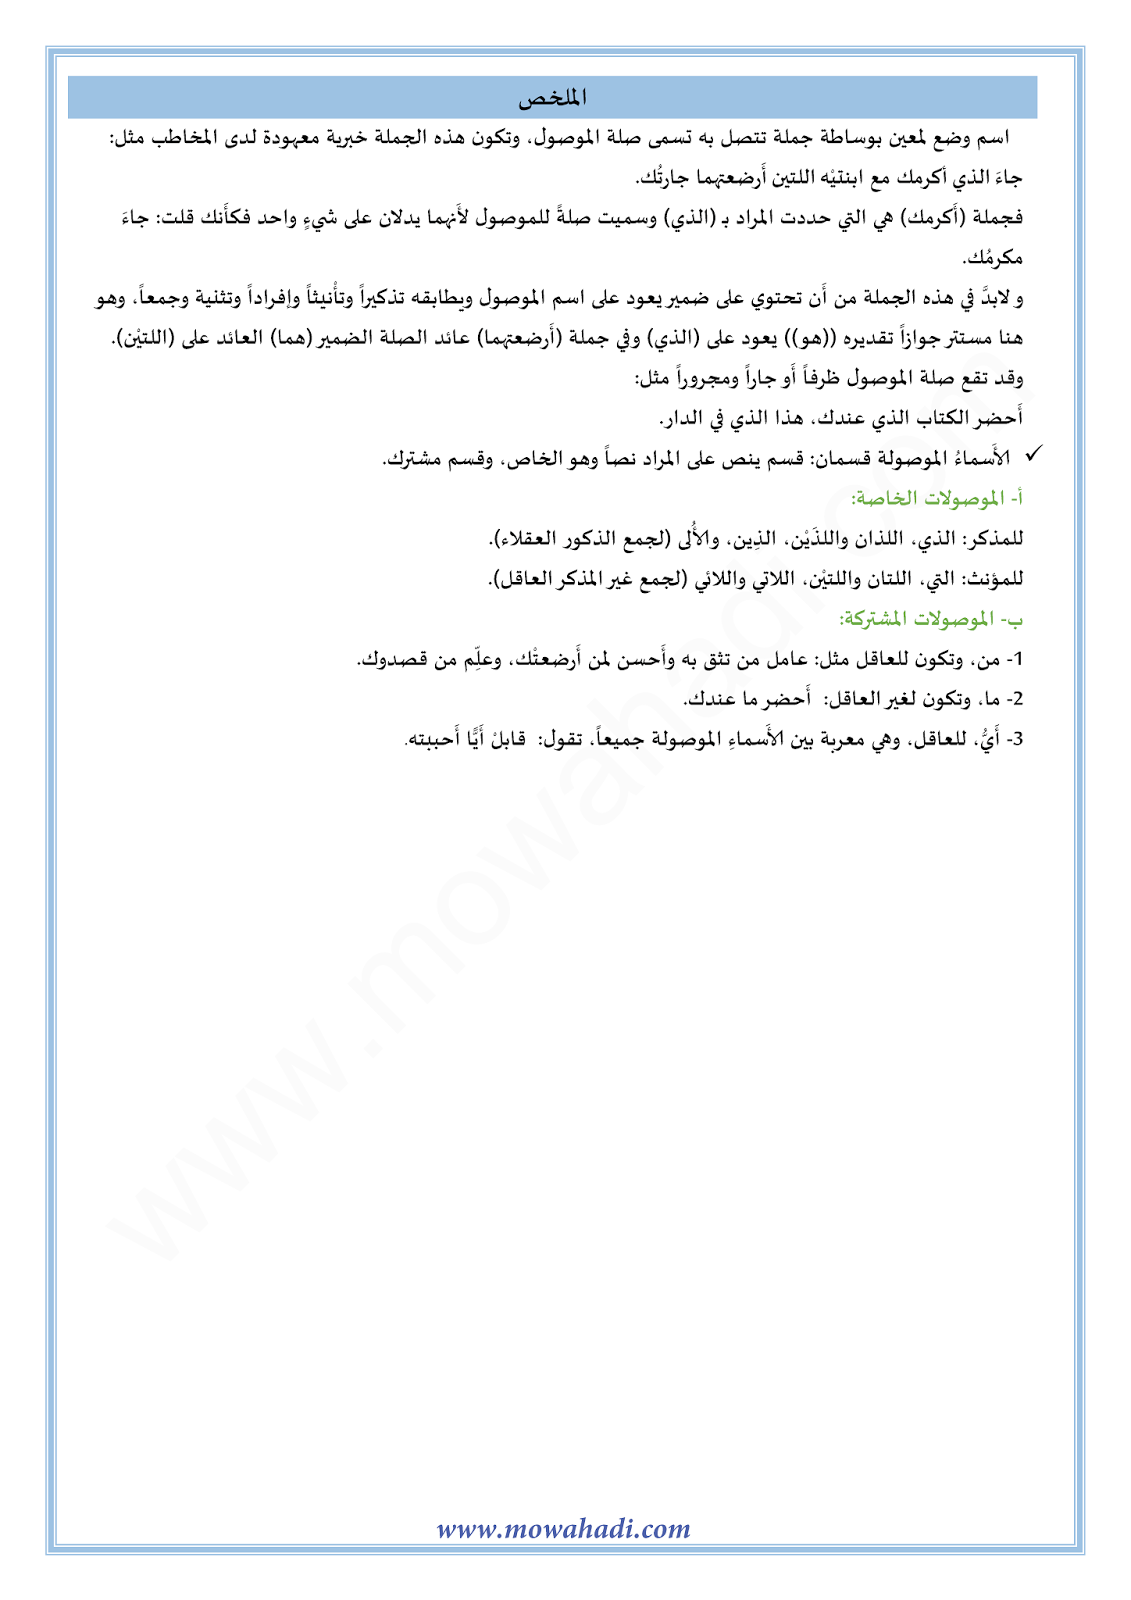 الدرس اللغوي الاسم الموصول للسنة الأولى اعدادي في مادة اللغة العربية 17-cours-dars-loghawi1_002